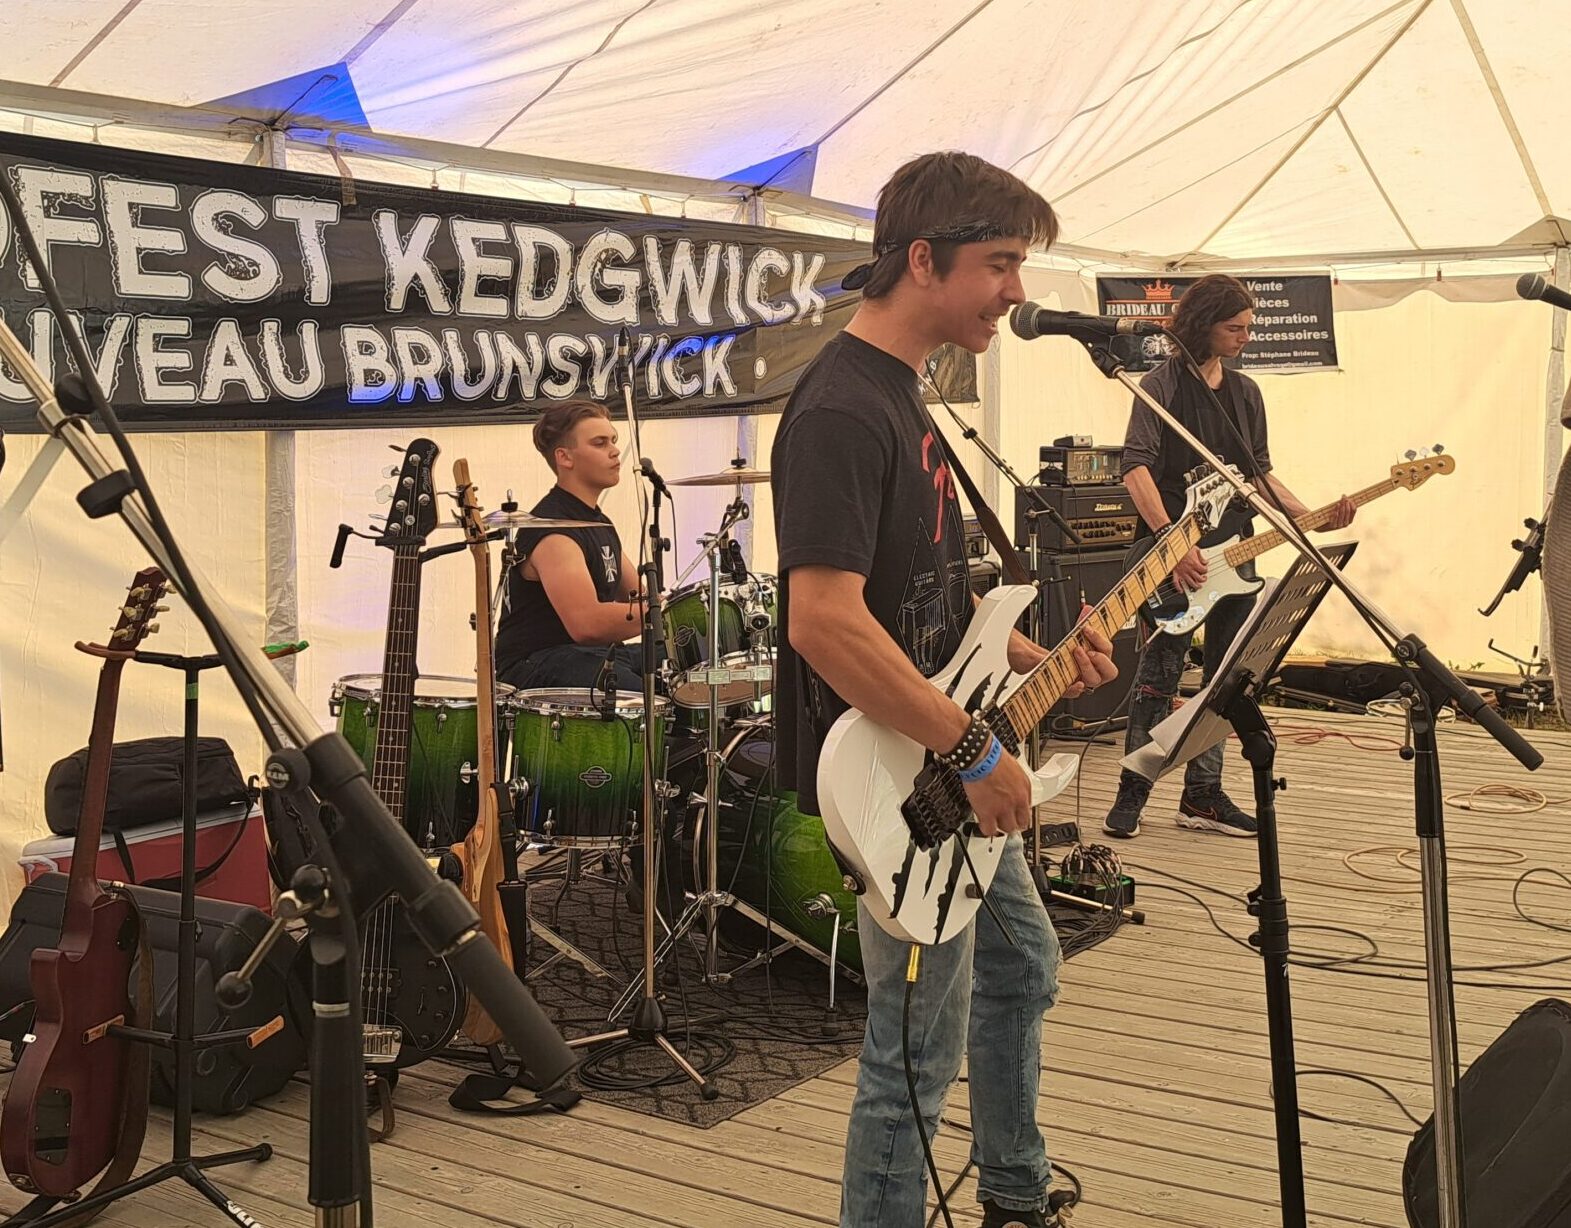 Trois en membre d'une groupe de musique rock en action durant un test de son, sur une scène